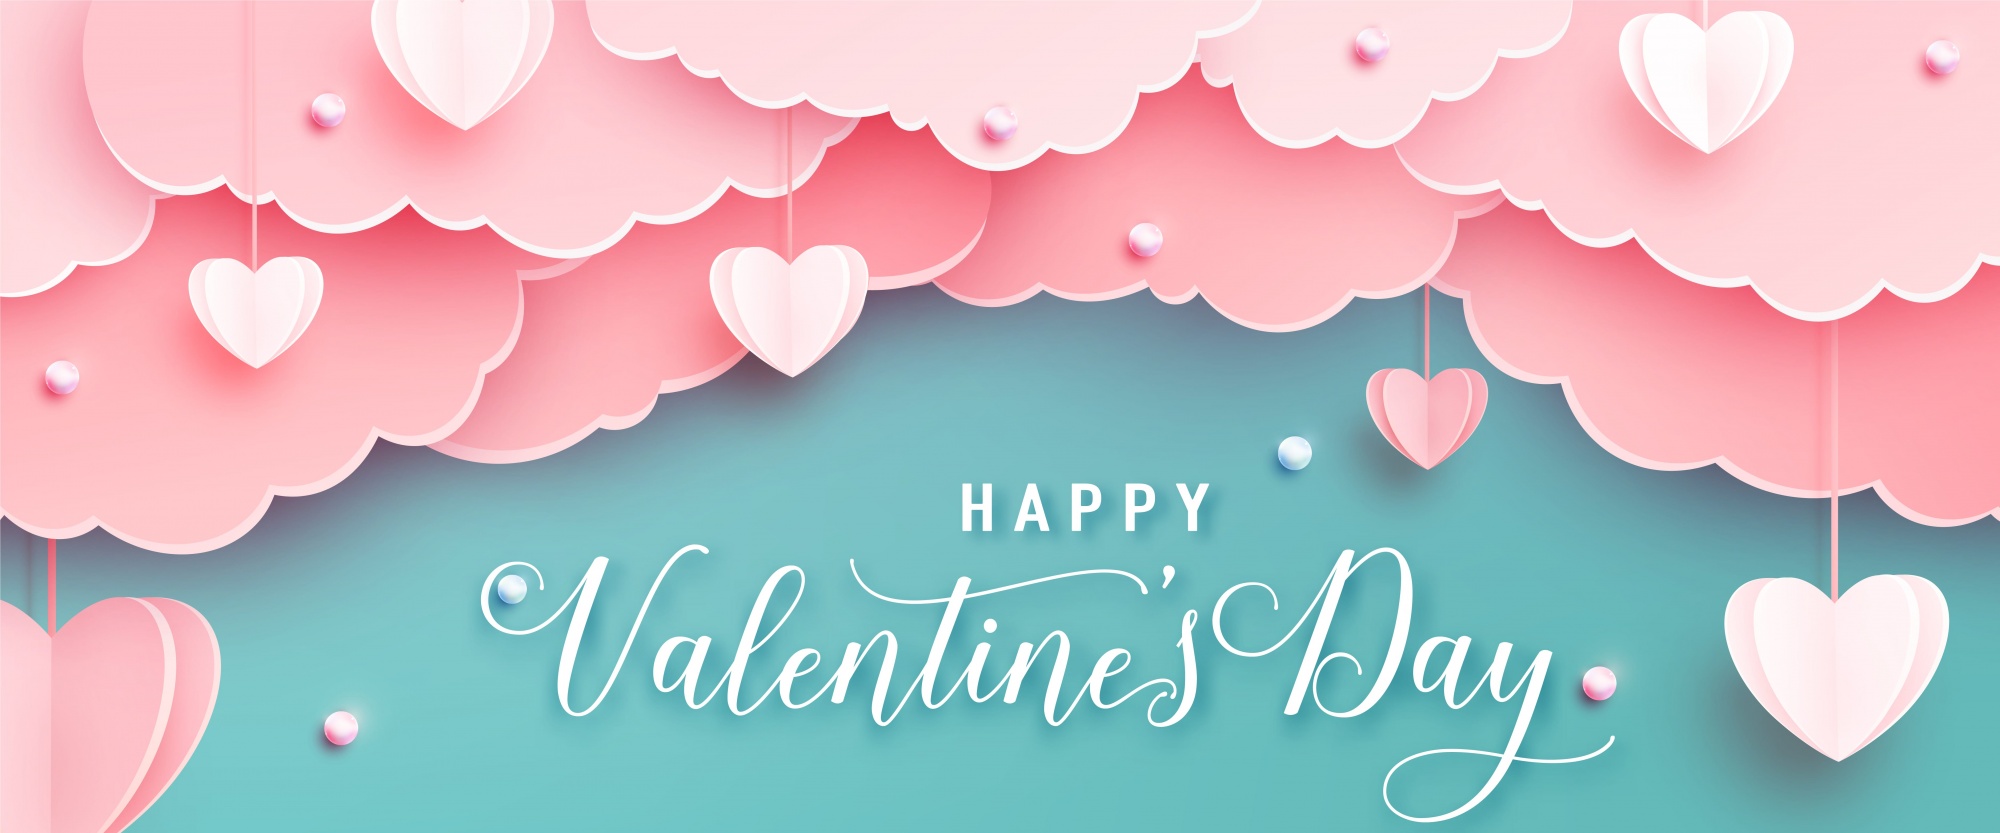 Подарки на 14 февраля и открытки своими руками, идеи, как провести День Влюбленных